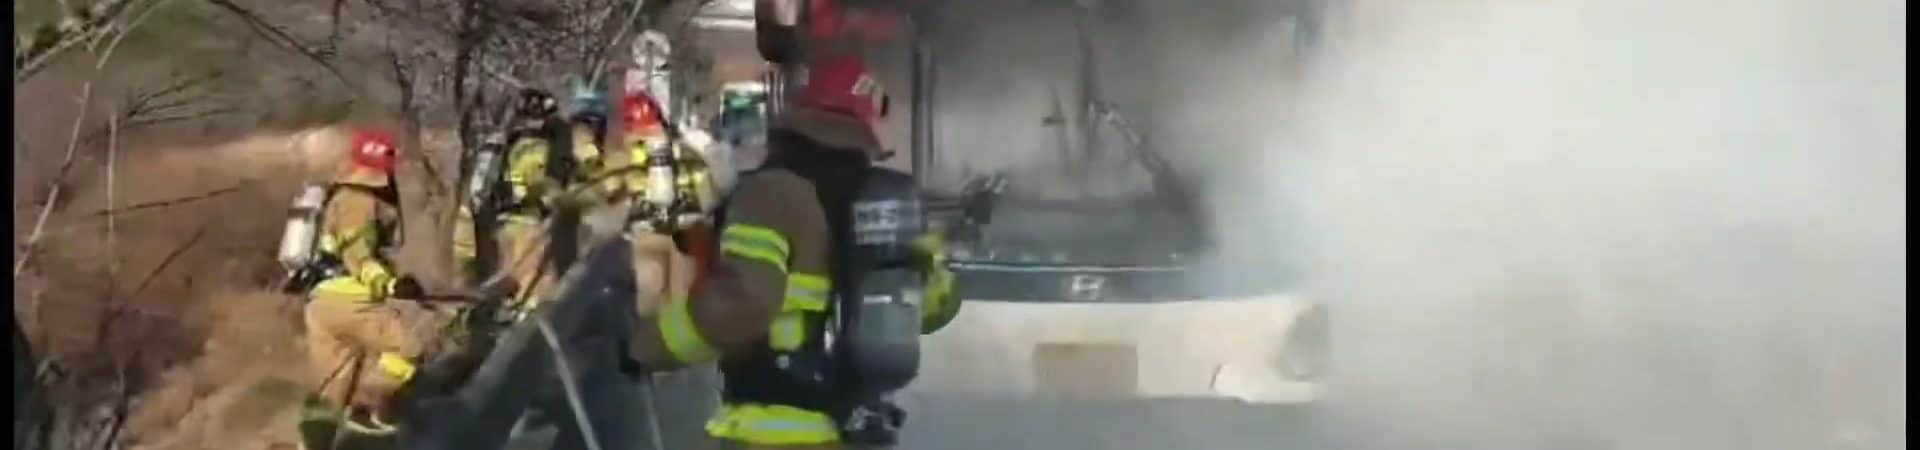 Imagem do ônibus elétrico da Hyundai incendiado, enquanto bombeiros tentam controlar as chamas